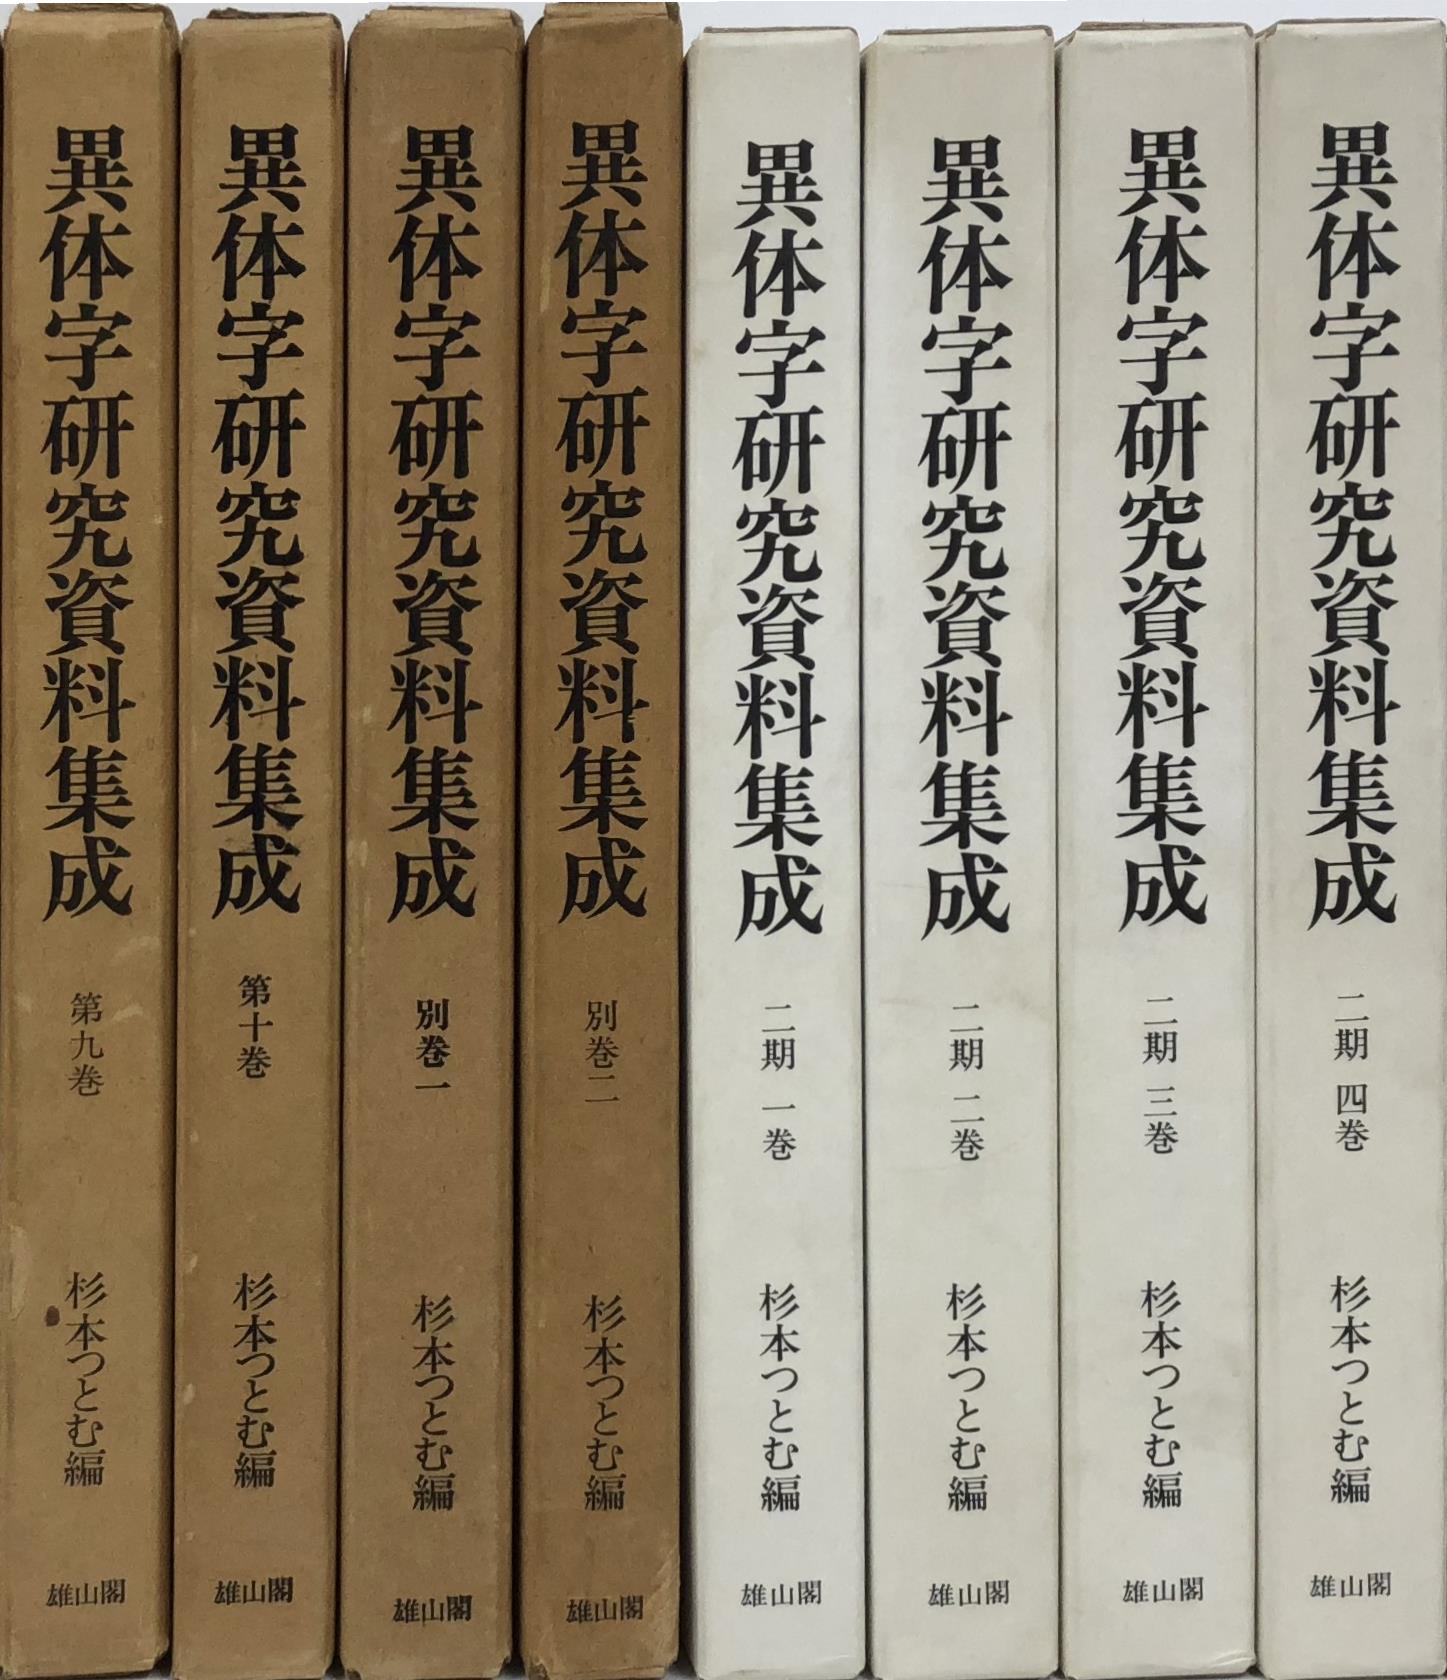 国文学・日本文学・言語学に関する書籍